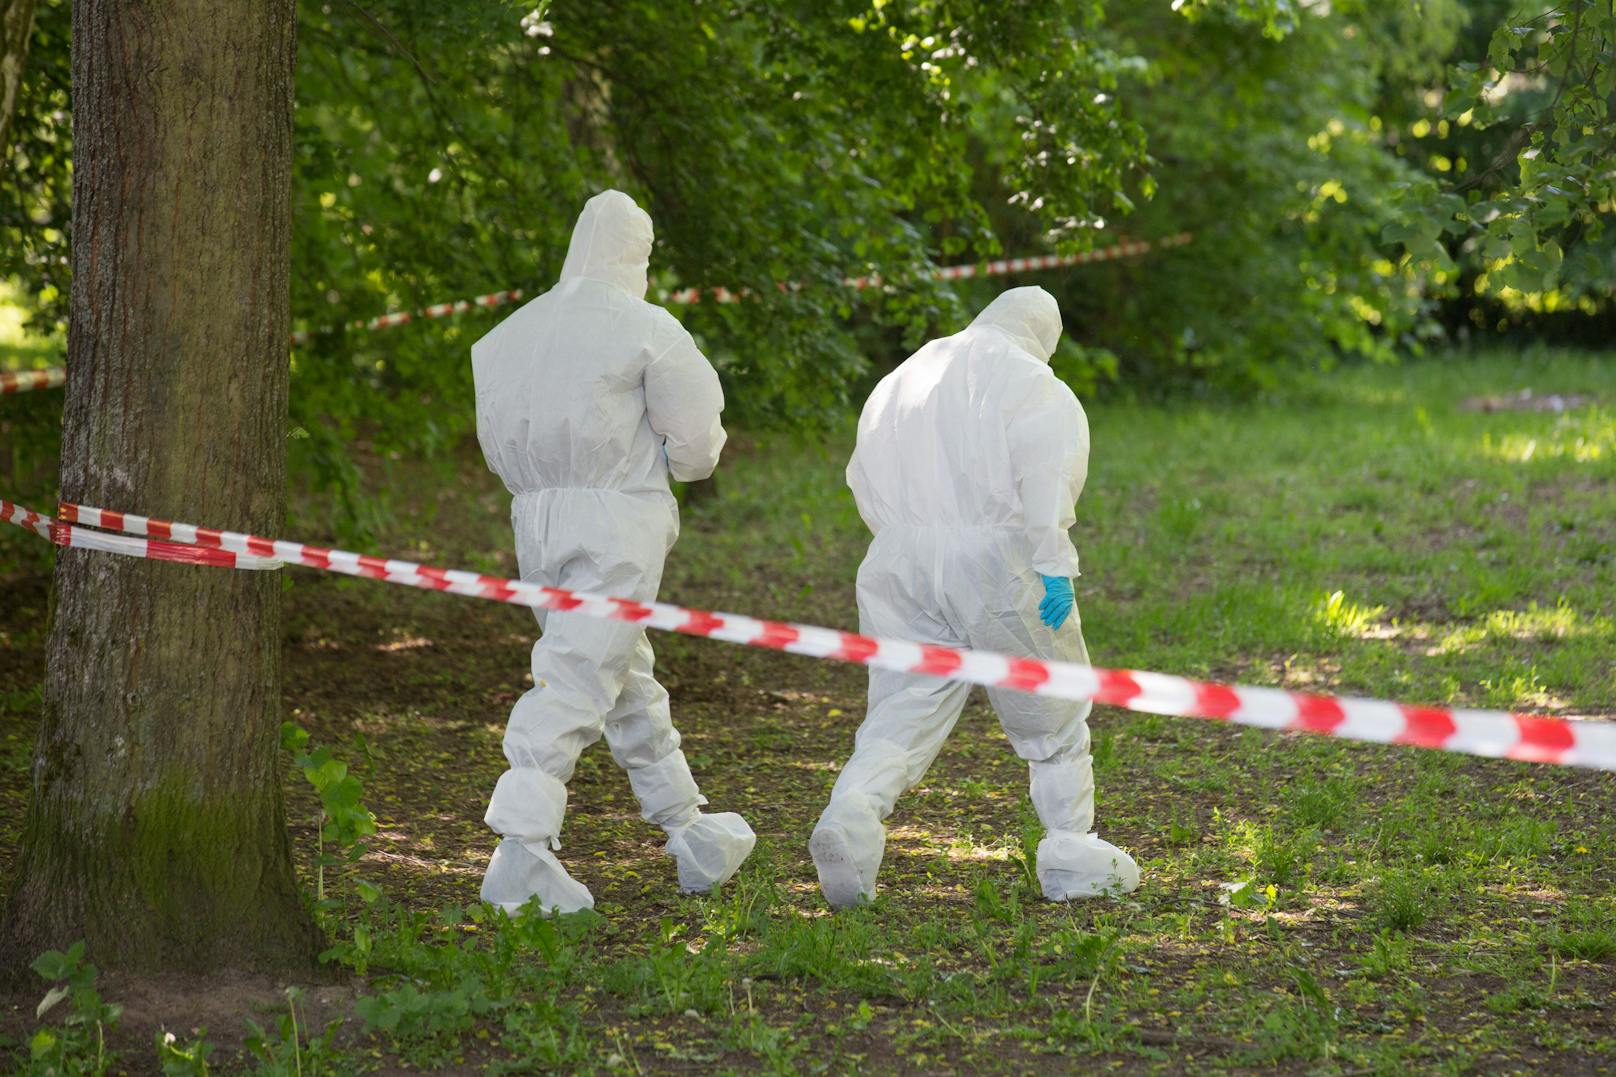 Nach dem Fund des abgetrennten Beins in einem Waldstück ermittelt die Dortmunder Polizei. (Symbolbild)